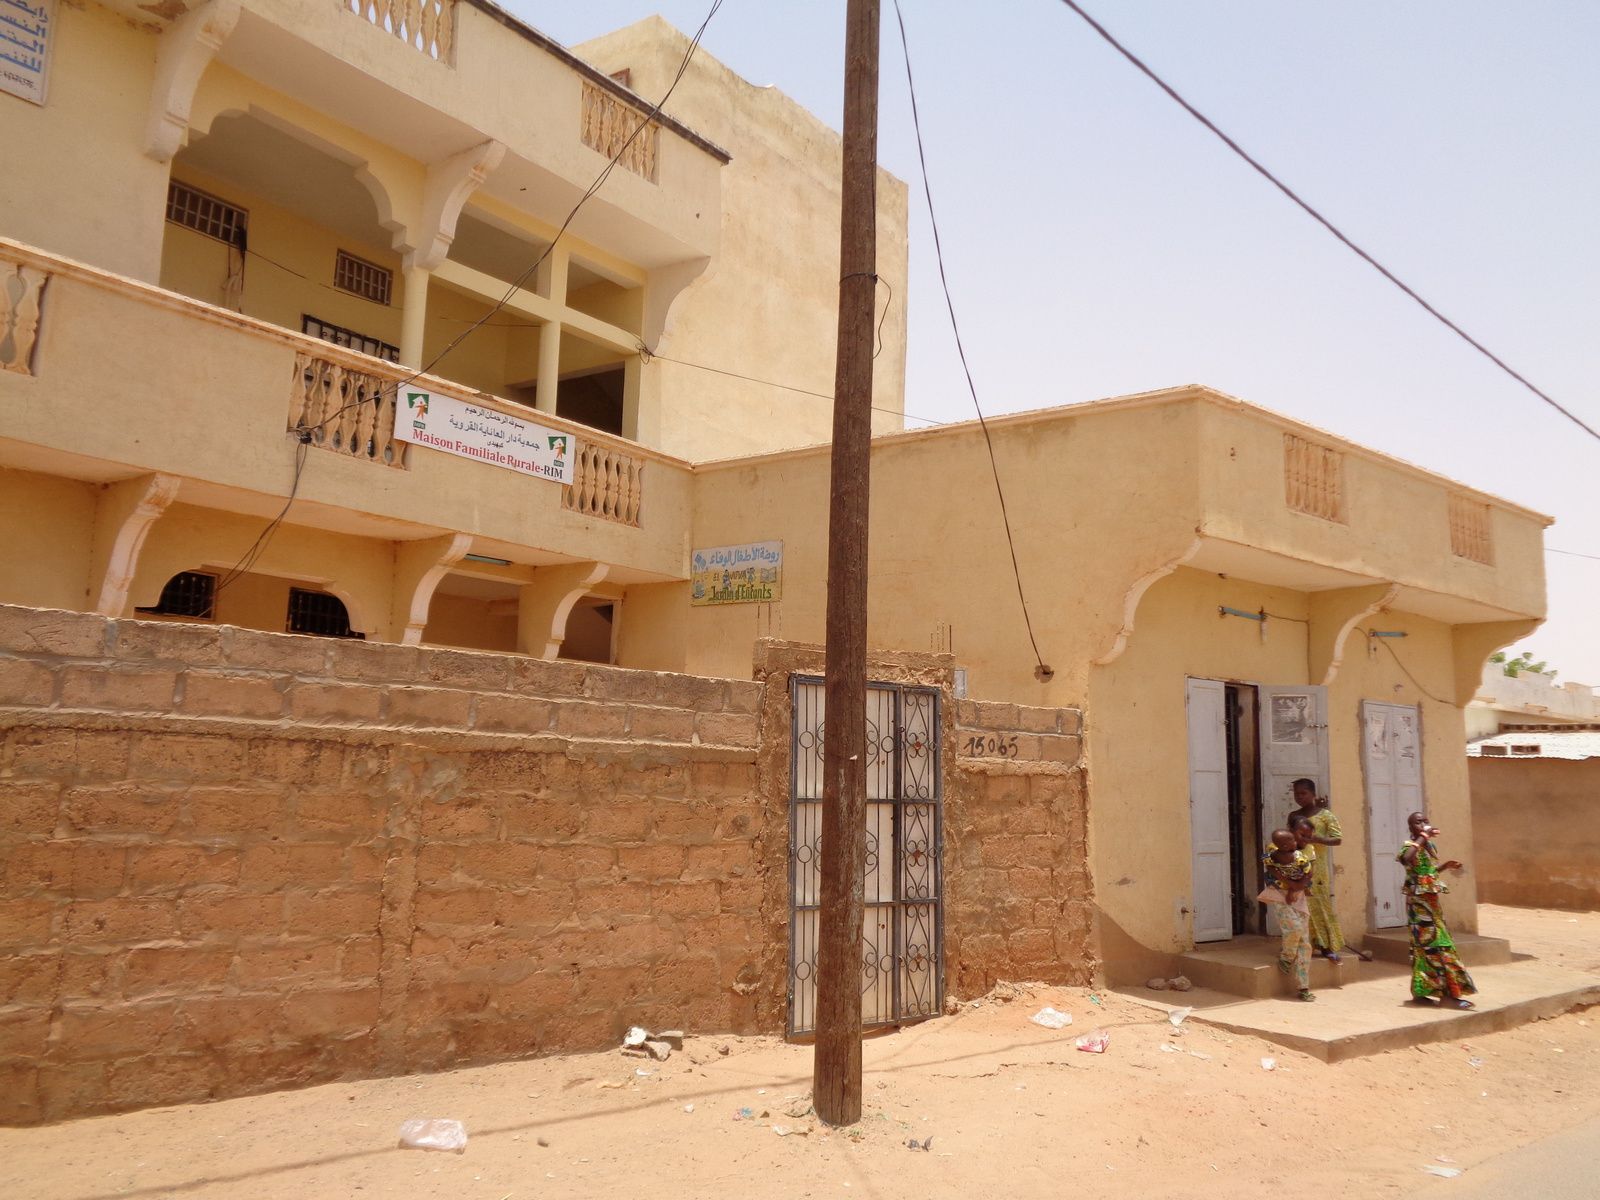 Maison Familiale Rurale de Kaédi, en Mauritanie (avril 2017).